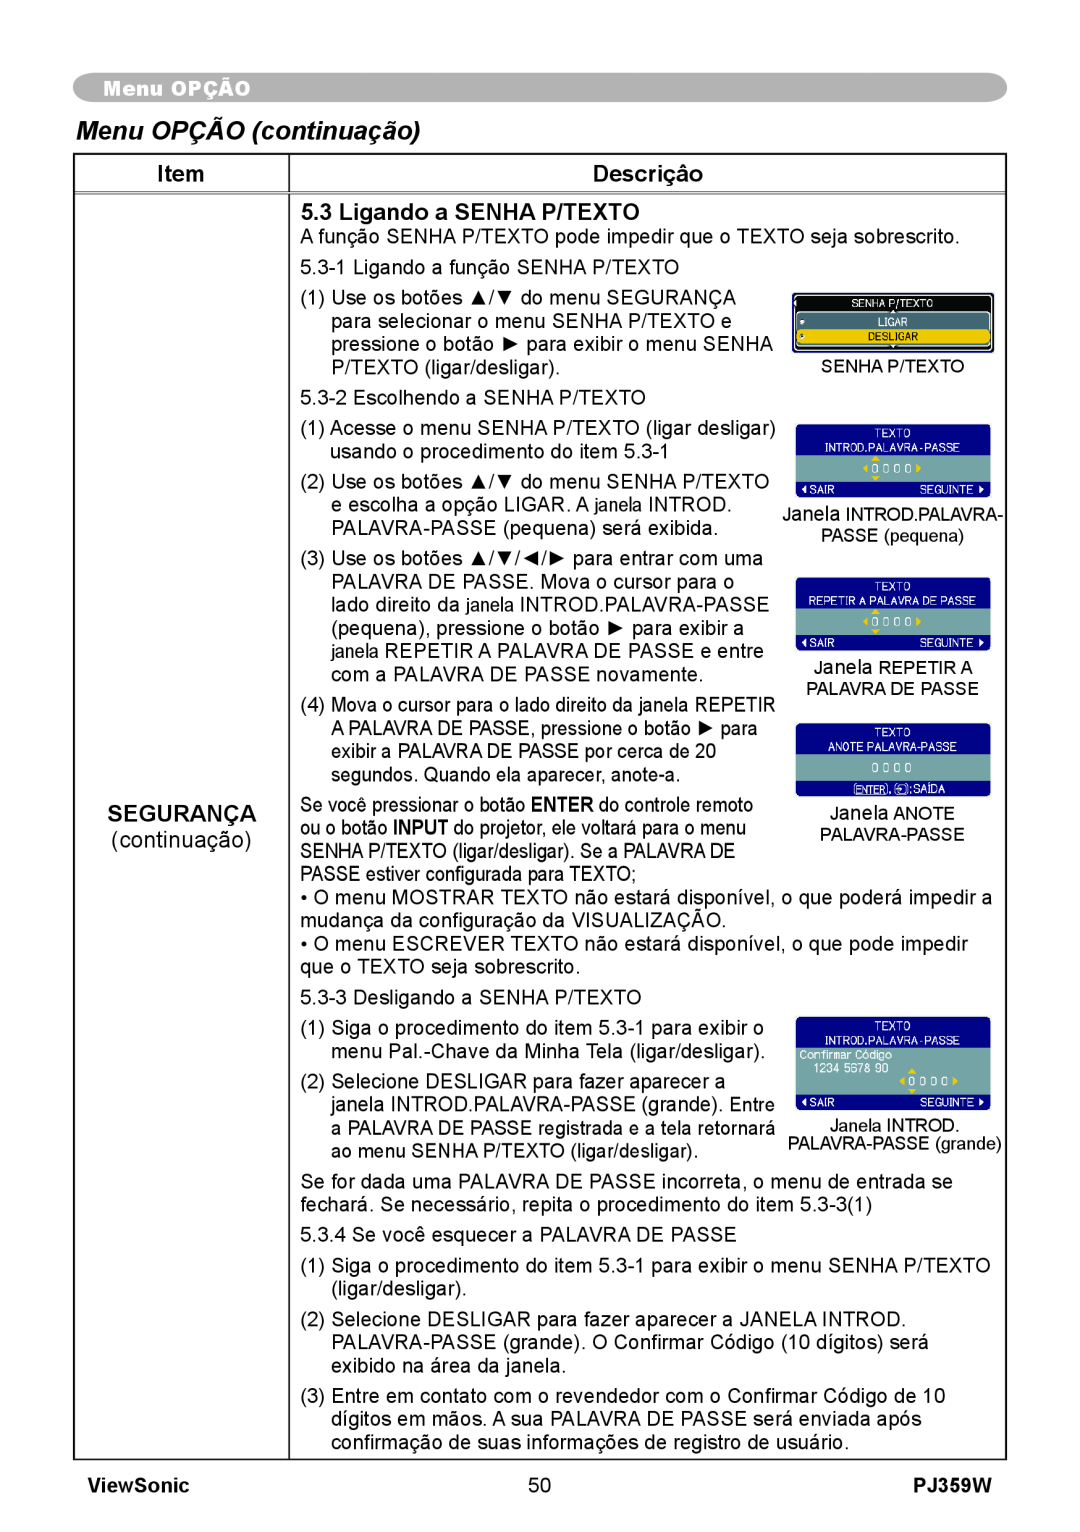 ViewSonic manual Menu OPÇÃO continuação, Descriçâo, Ligando a SENHA P/TEXTO, Segurança, ViewSonic, PJ359W 